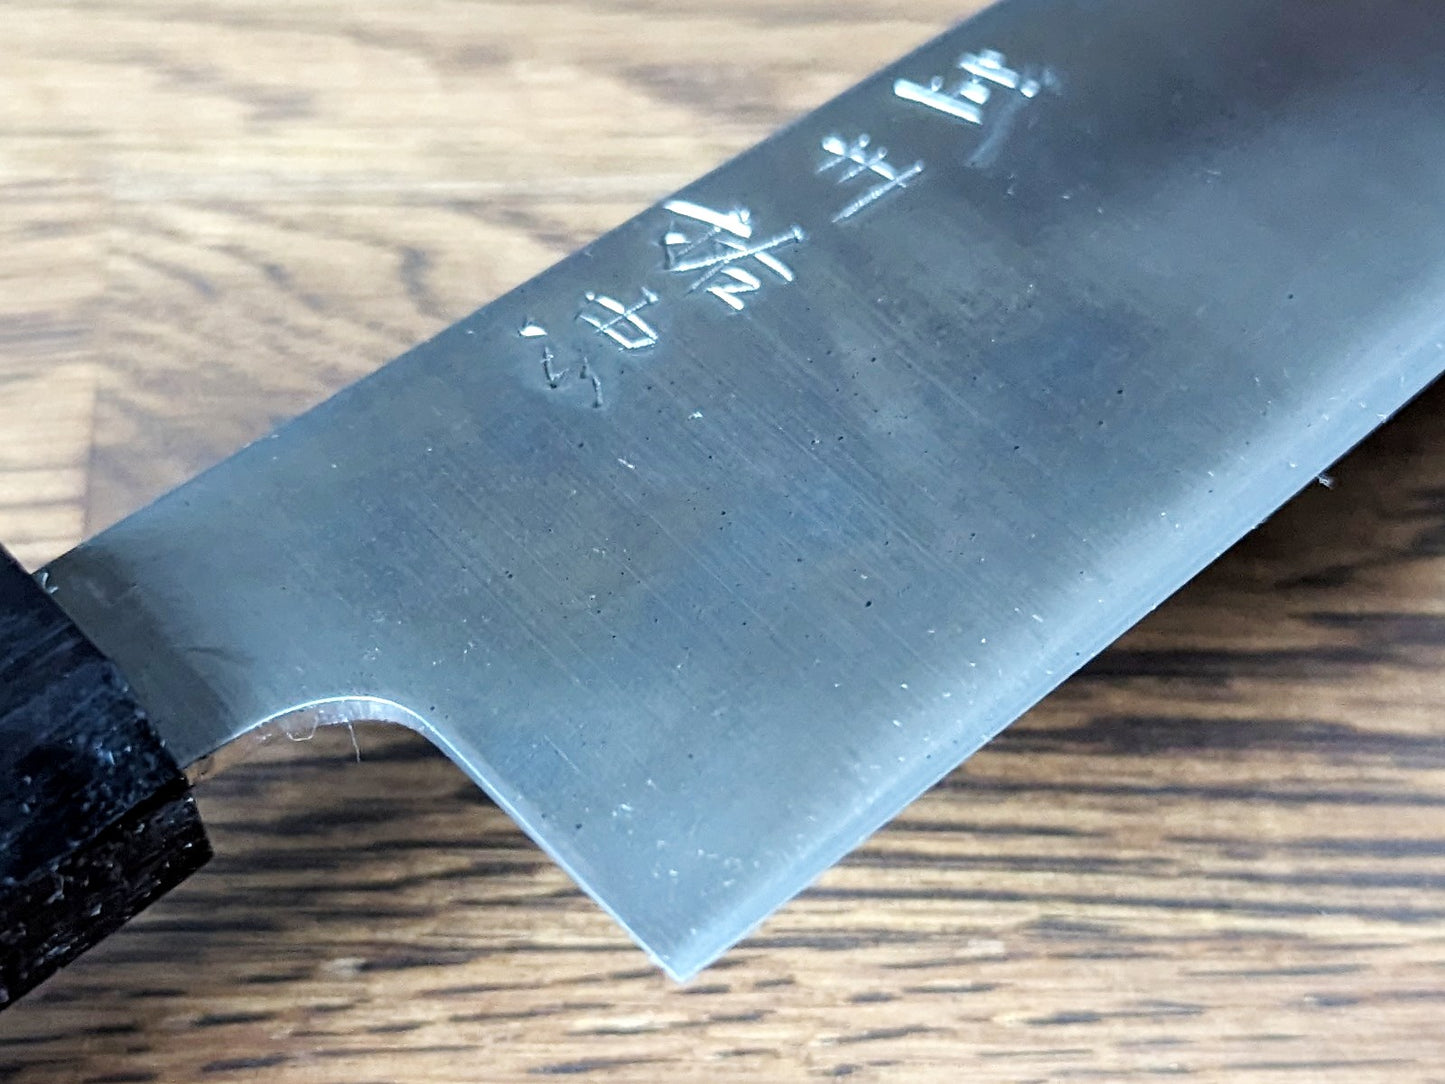 Suketada Kikuchi Tamahagane Santoku (Bunka) 170mm